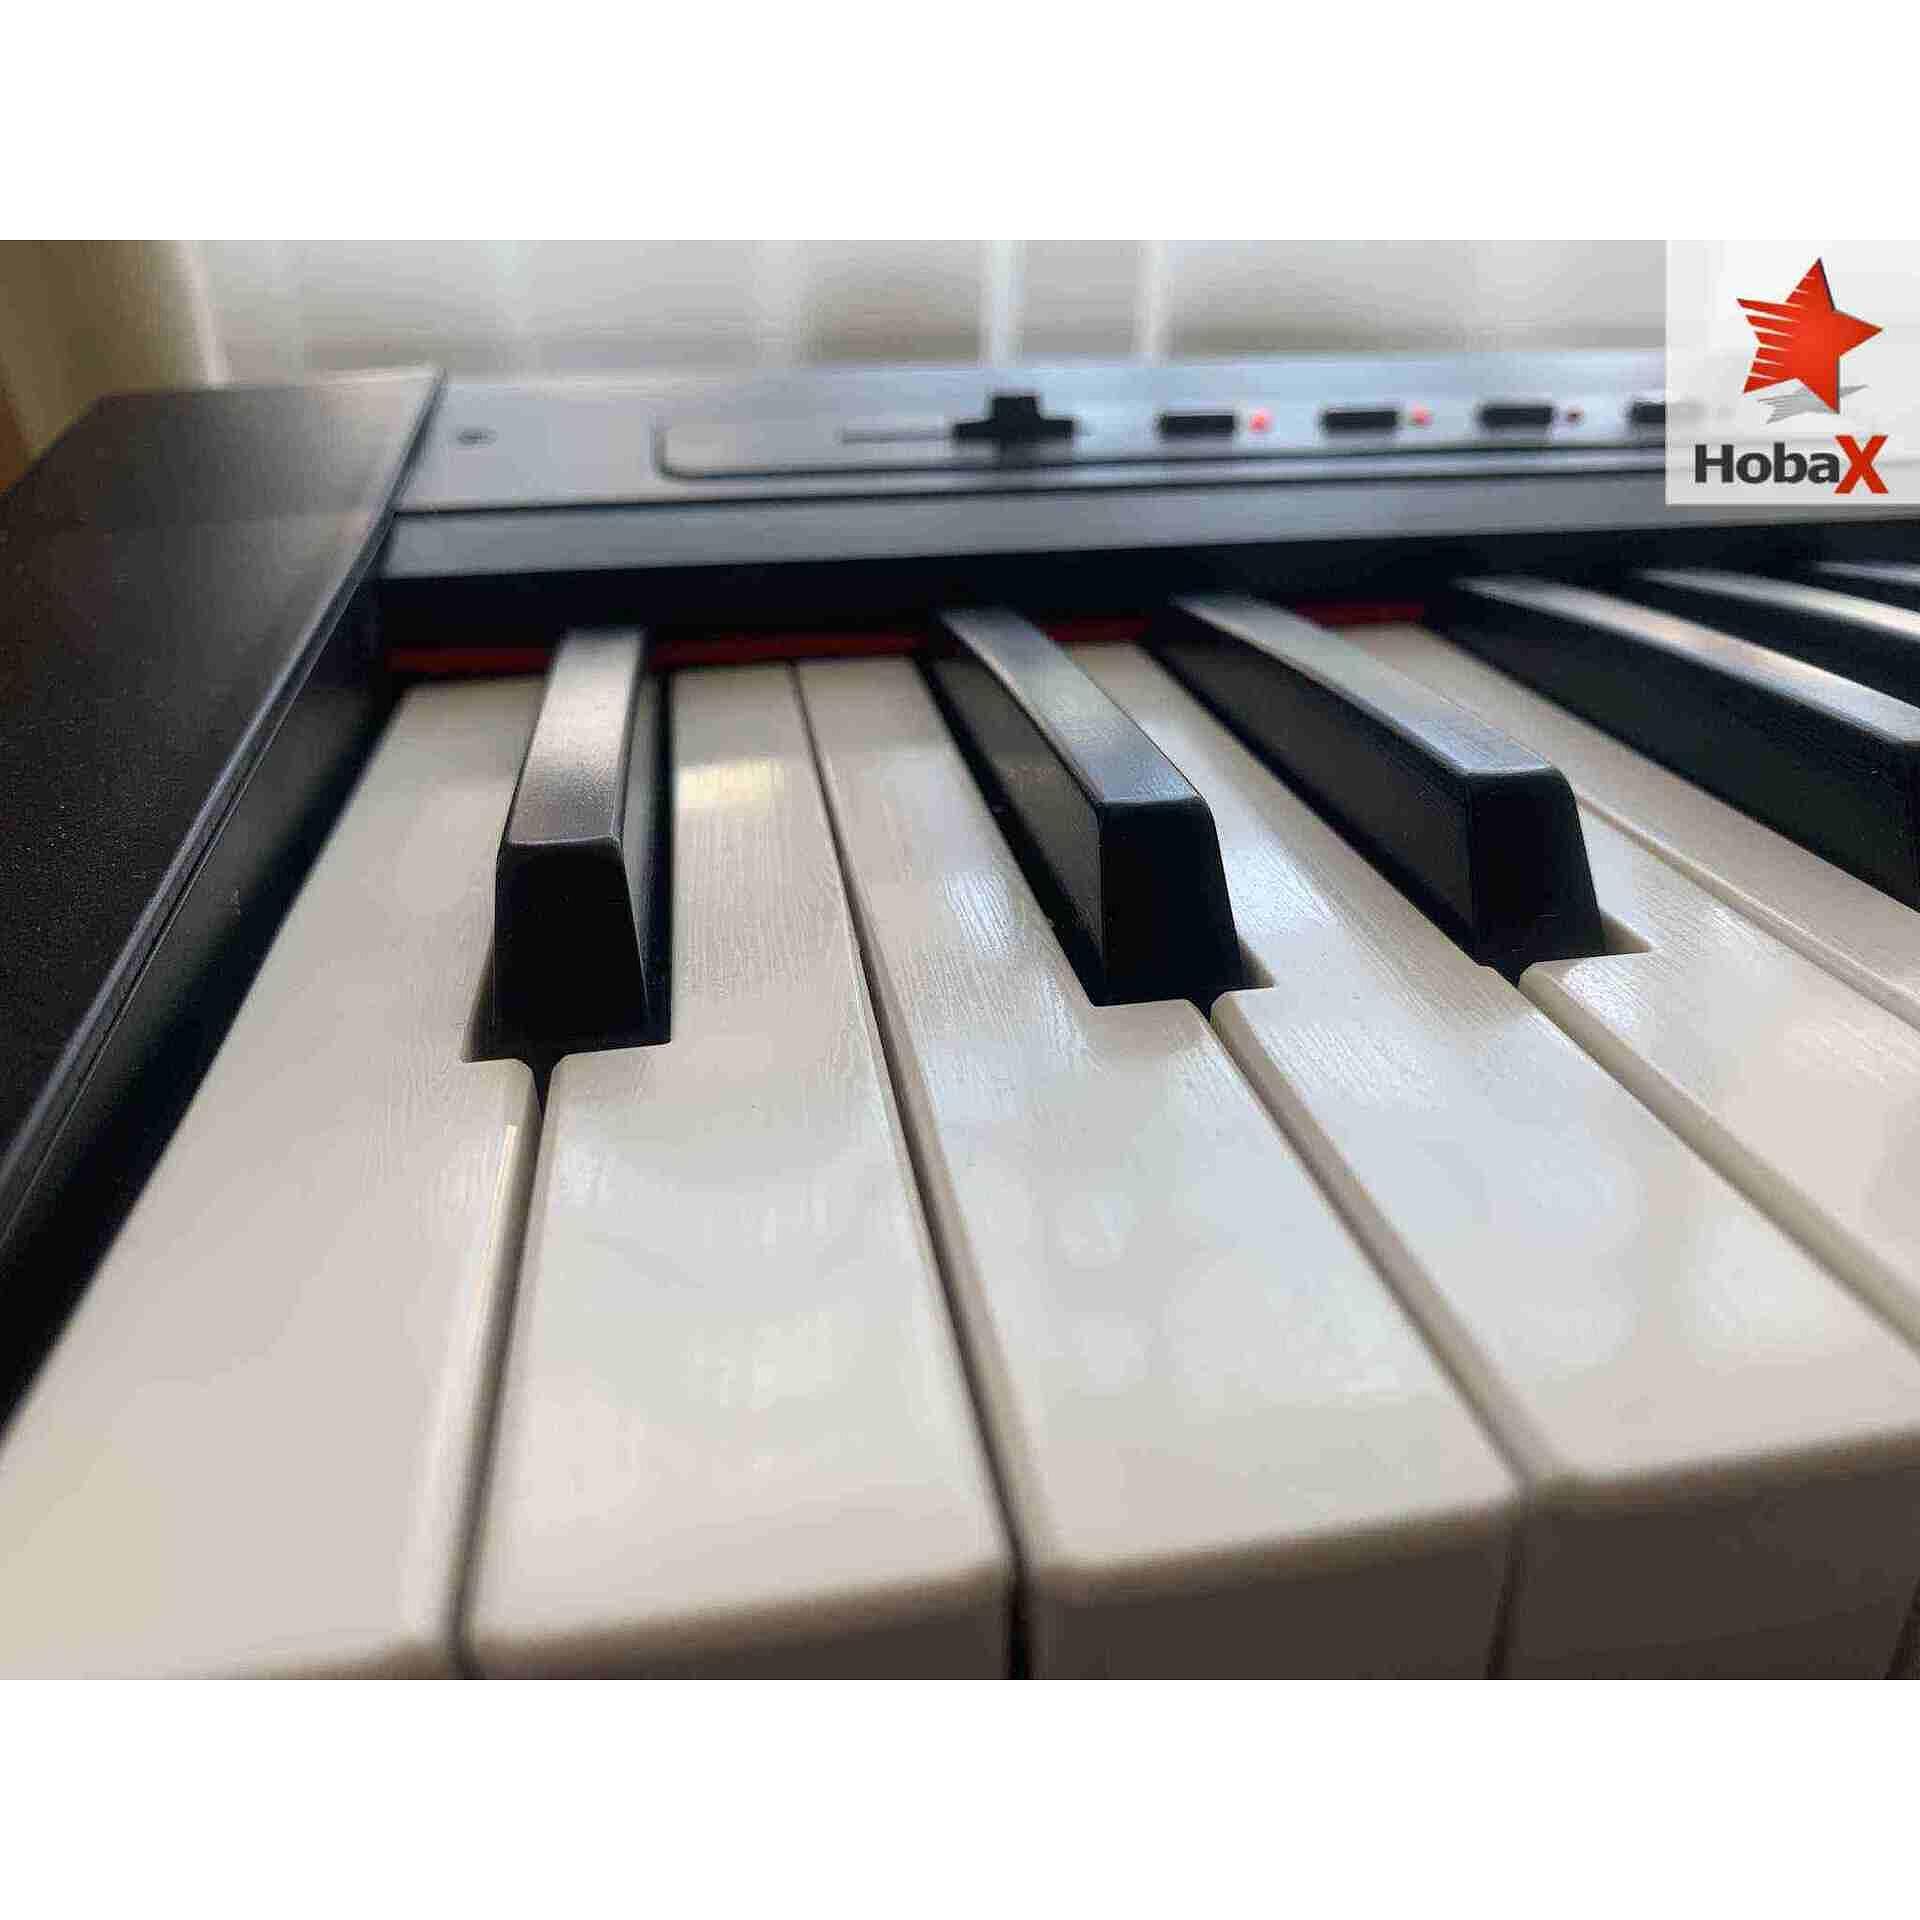 Комплект дигитално пиано Hobax S-196, 88 клавиша, 7 октави, 8 звуци, 128 ритми, вградена стойка за ноти, sustain педал + 3 ПОДАРЪКА - стикери за пиано, слушалки и х стойка